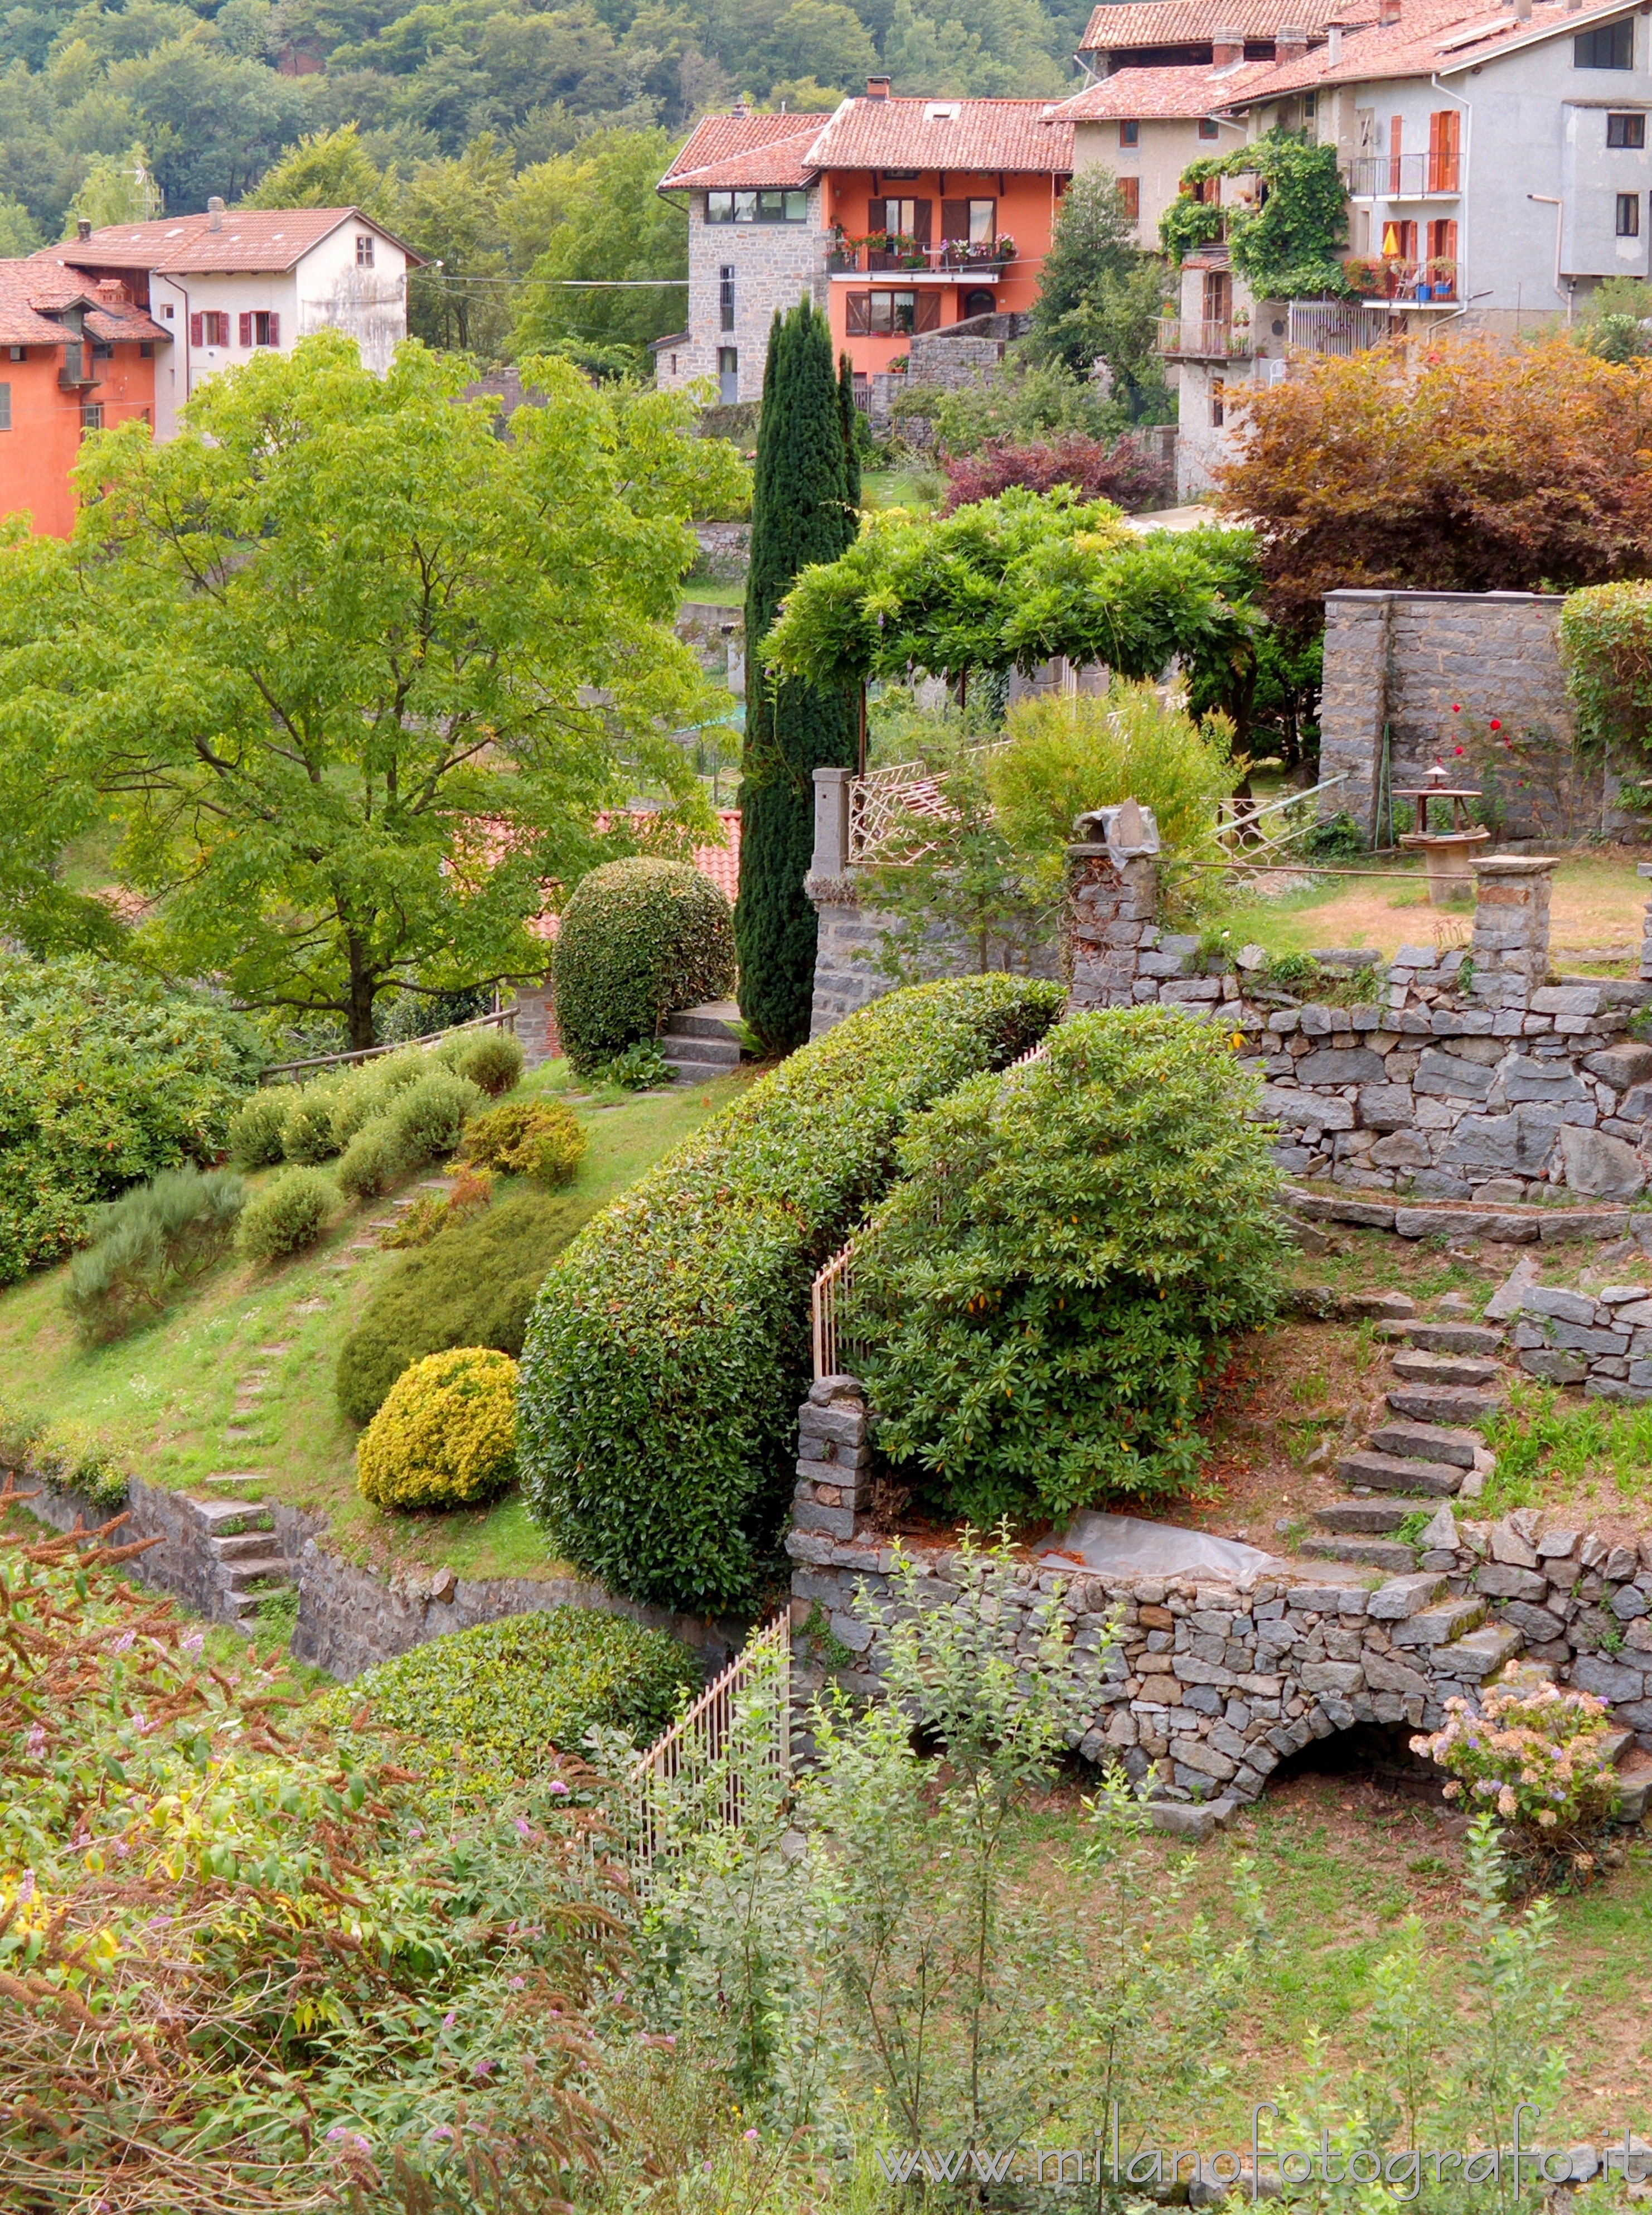 Quittengo frazione di Campiglia Cervo (Biella): Case e giardini del paese - Quittengo frazione di Campiglia Cervo (Biella)